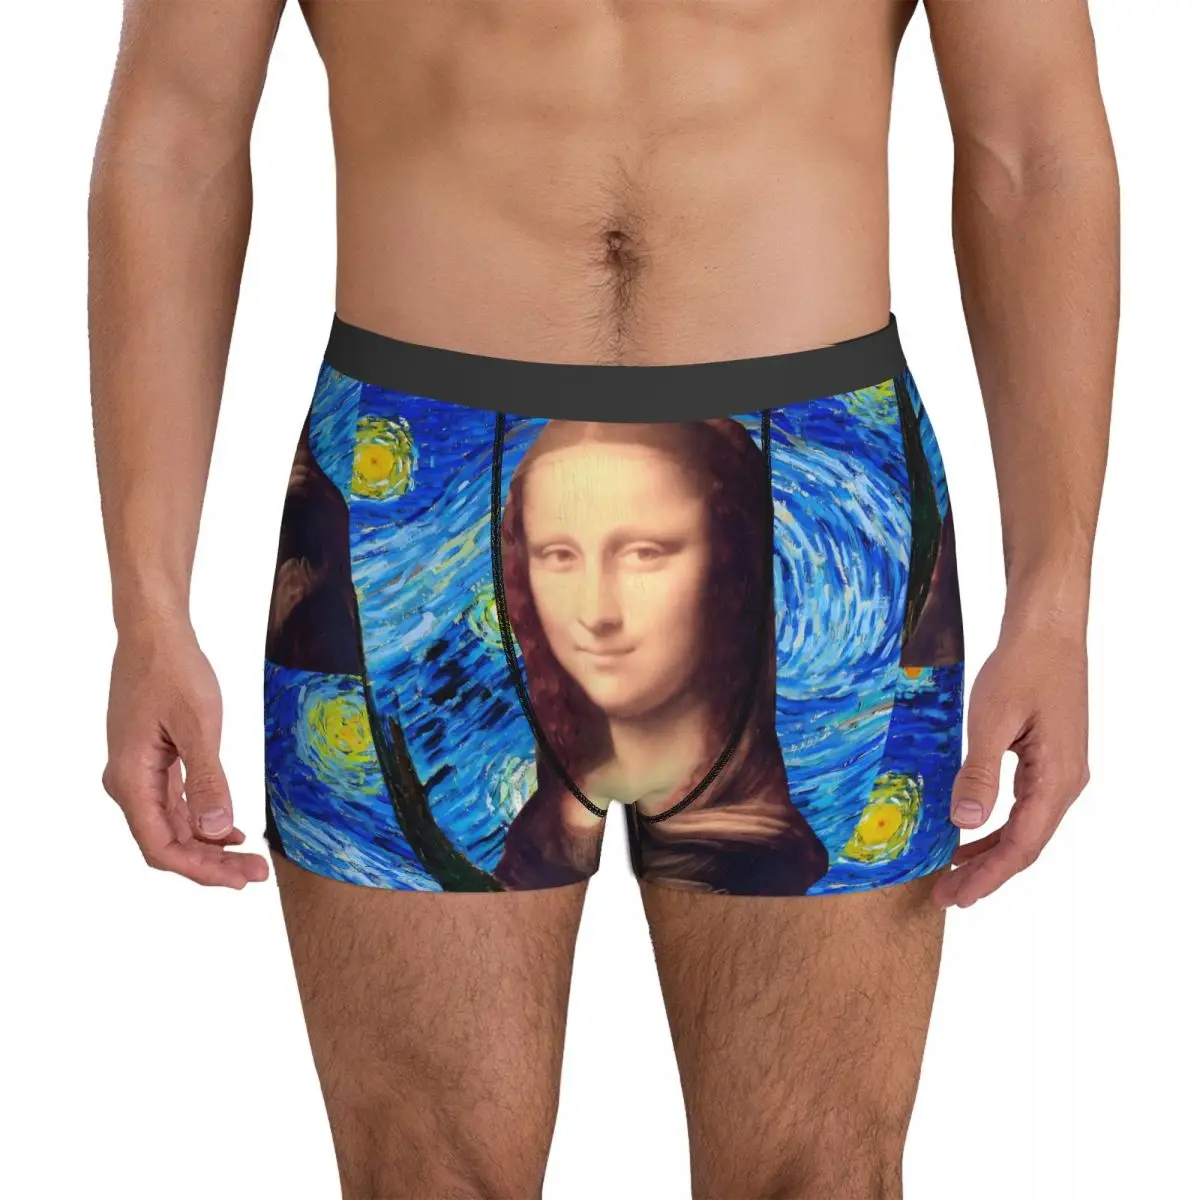 

Mona Lisa Art нижнее белье Звездная ночь печать на заказ DIY ствол горячая распродажа мужские трусы милые шорты трусы подарок на день рождения